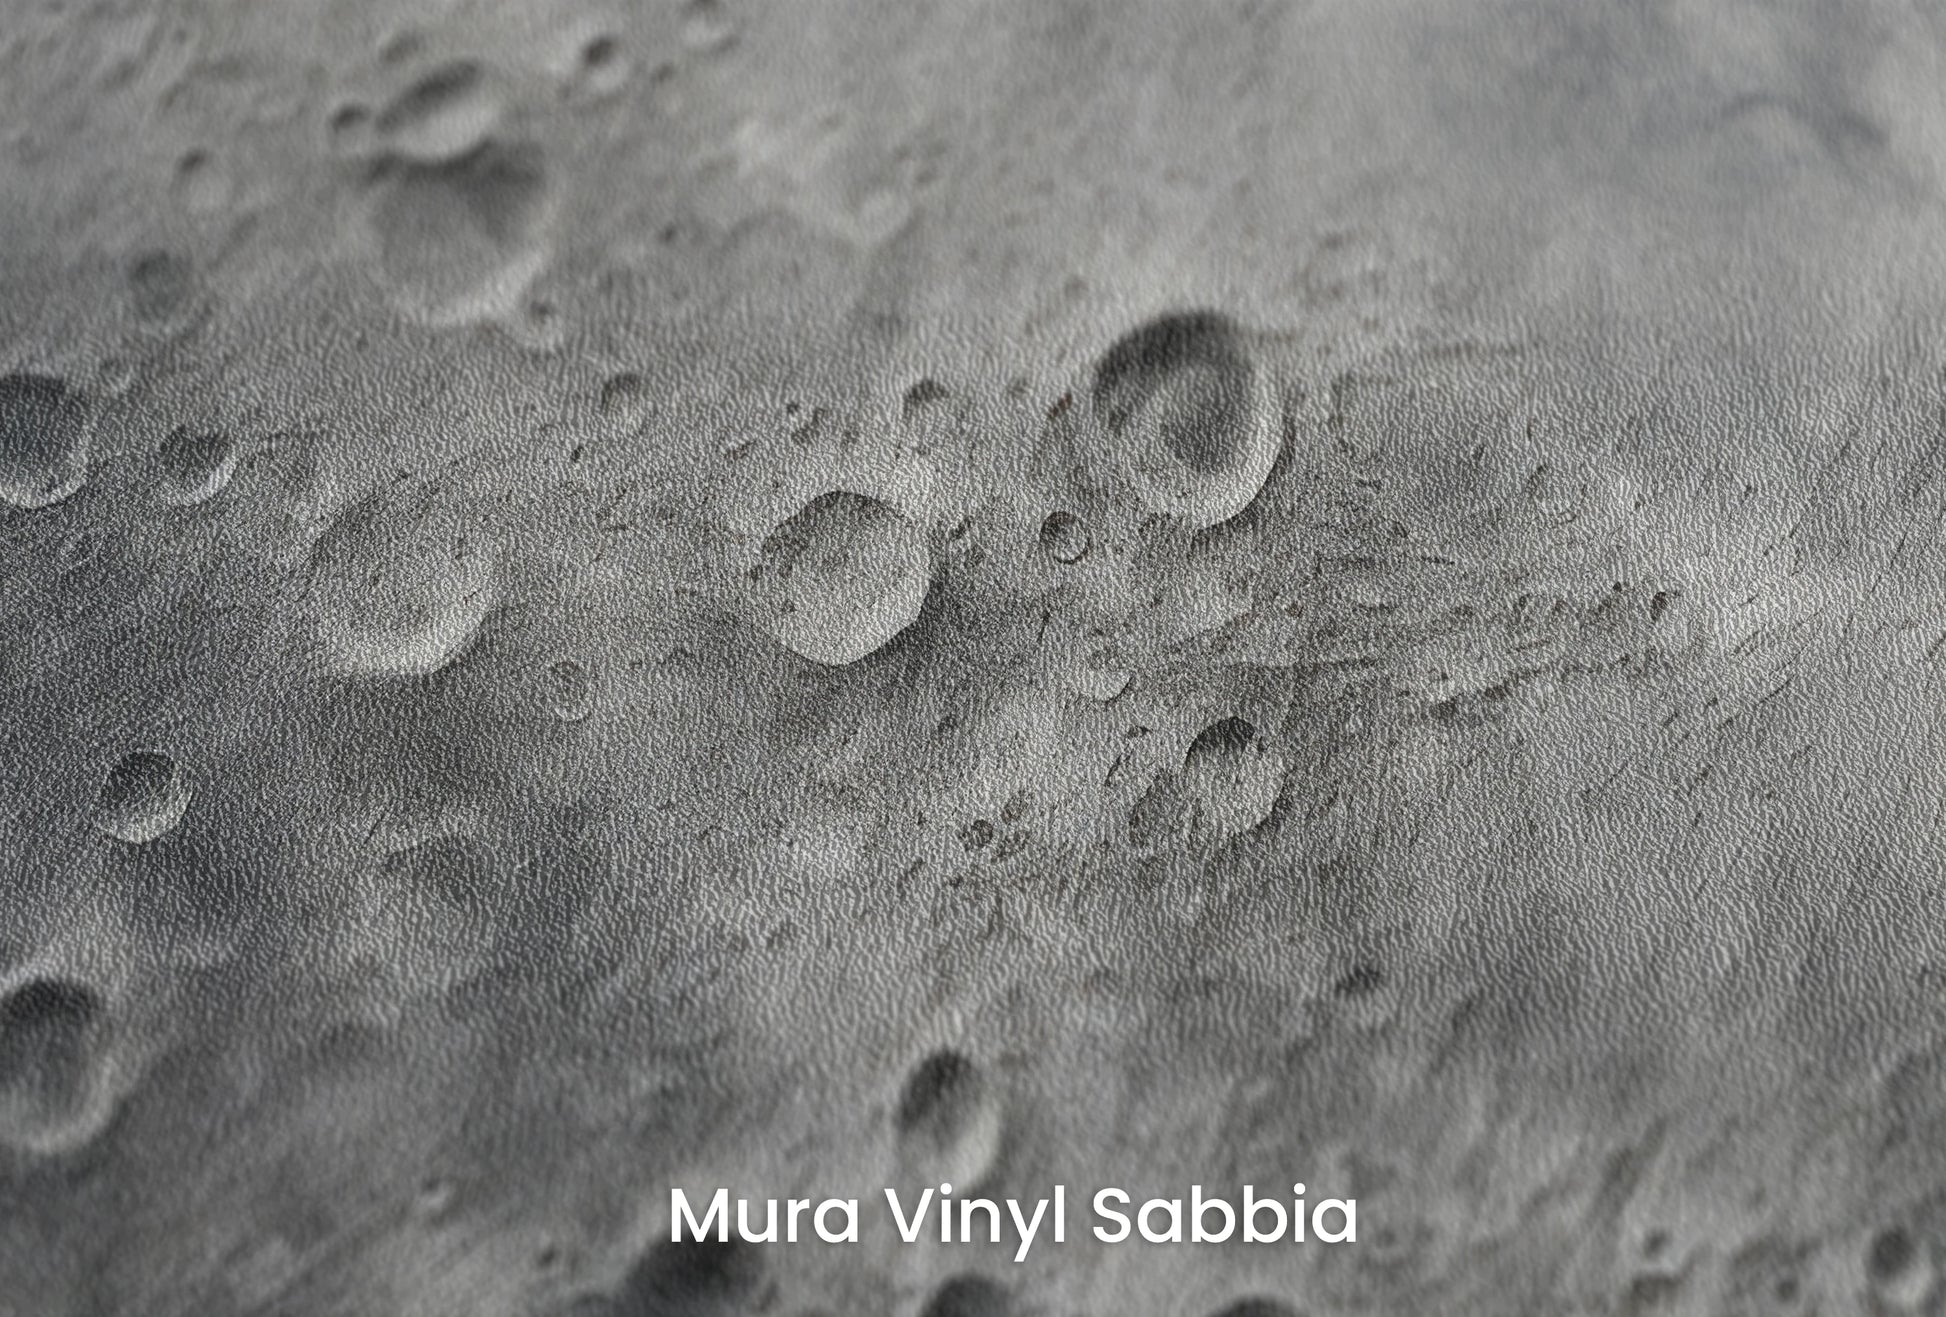 Zbliżenie na artystyczną fototapetę o nazwie Moon's Monochrome 2 na podłożu Mura Vinyl Sabbia struktura grubego ziarna piasku.